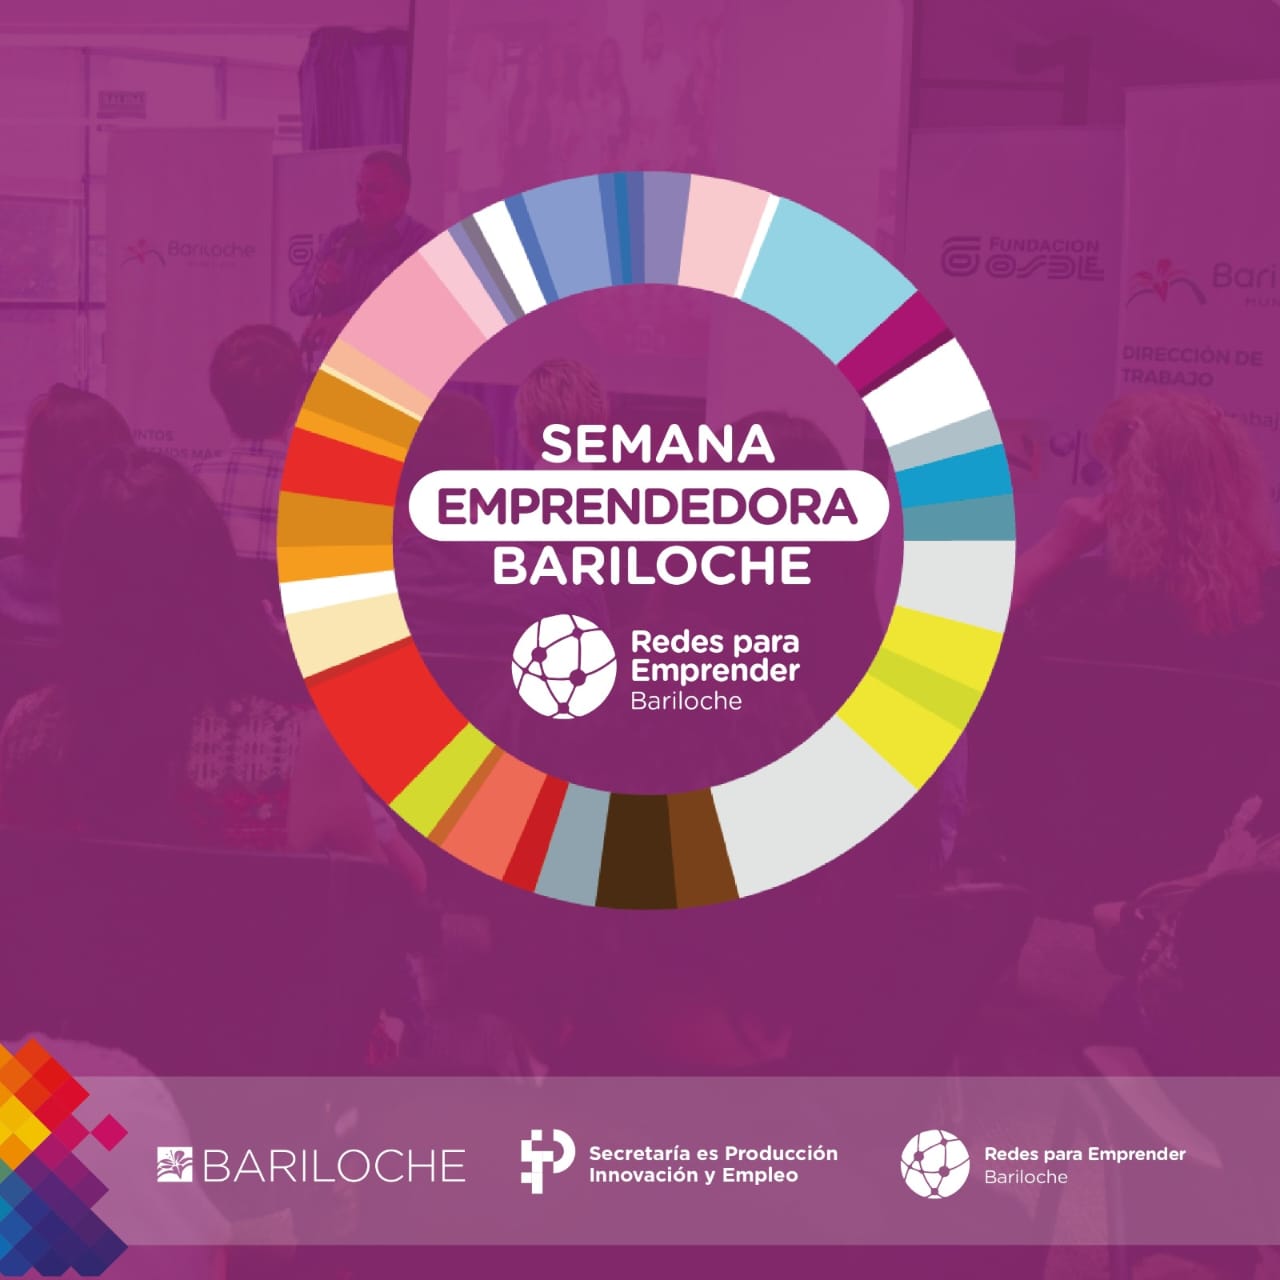 Invitan a visitar la Exposición Emprendedora Bariloche en el Puerto San Carlos